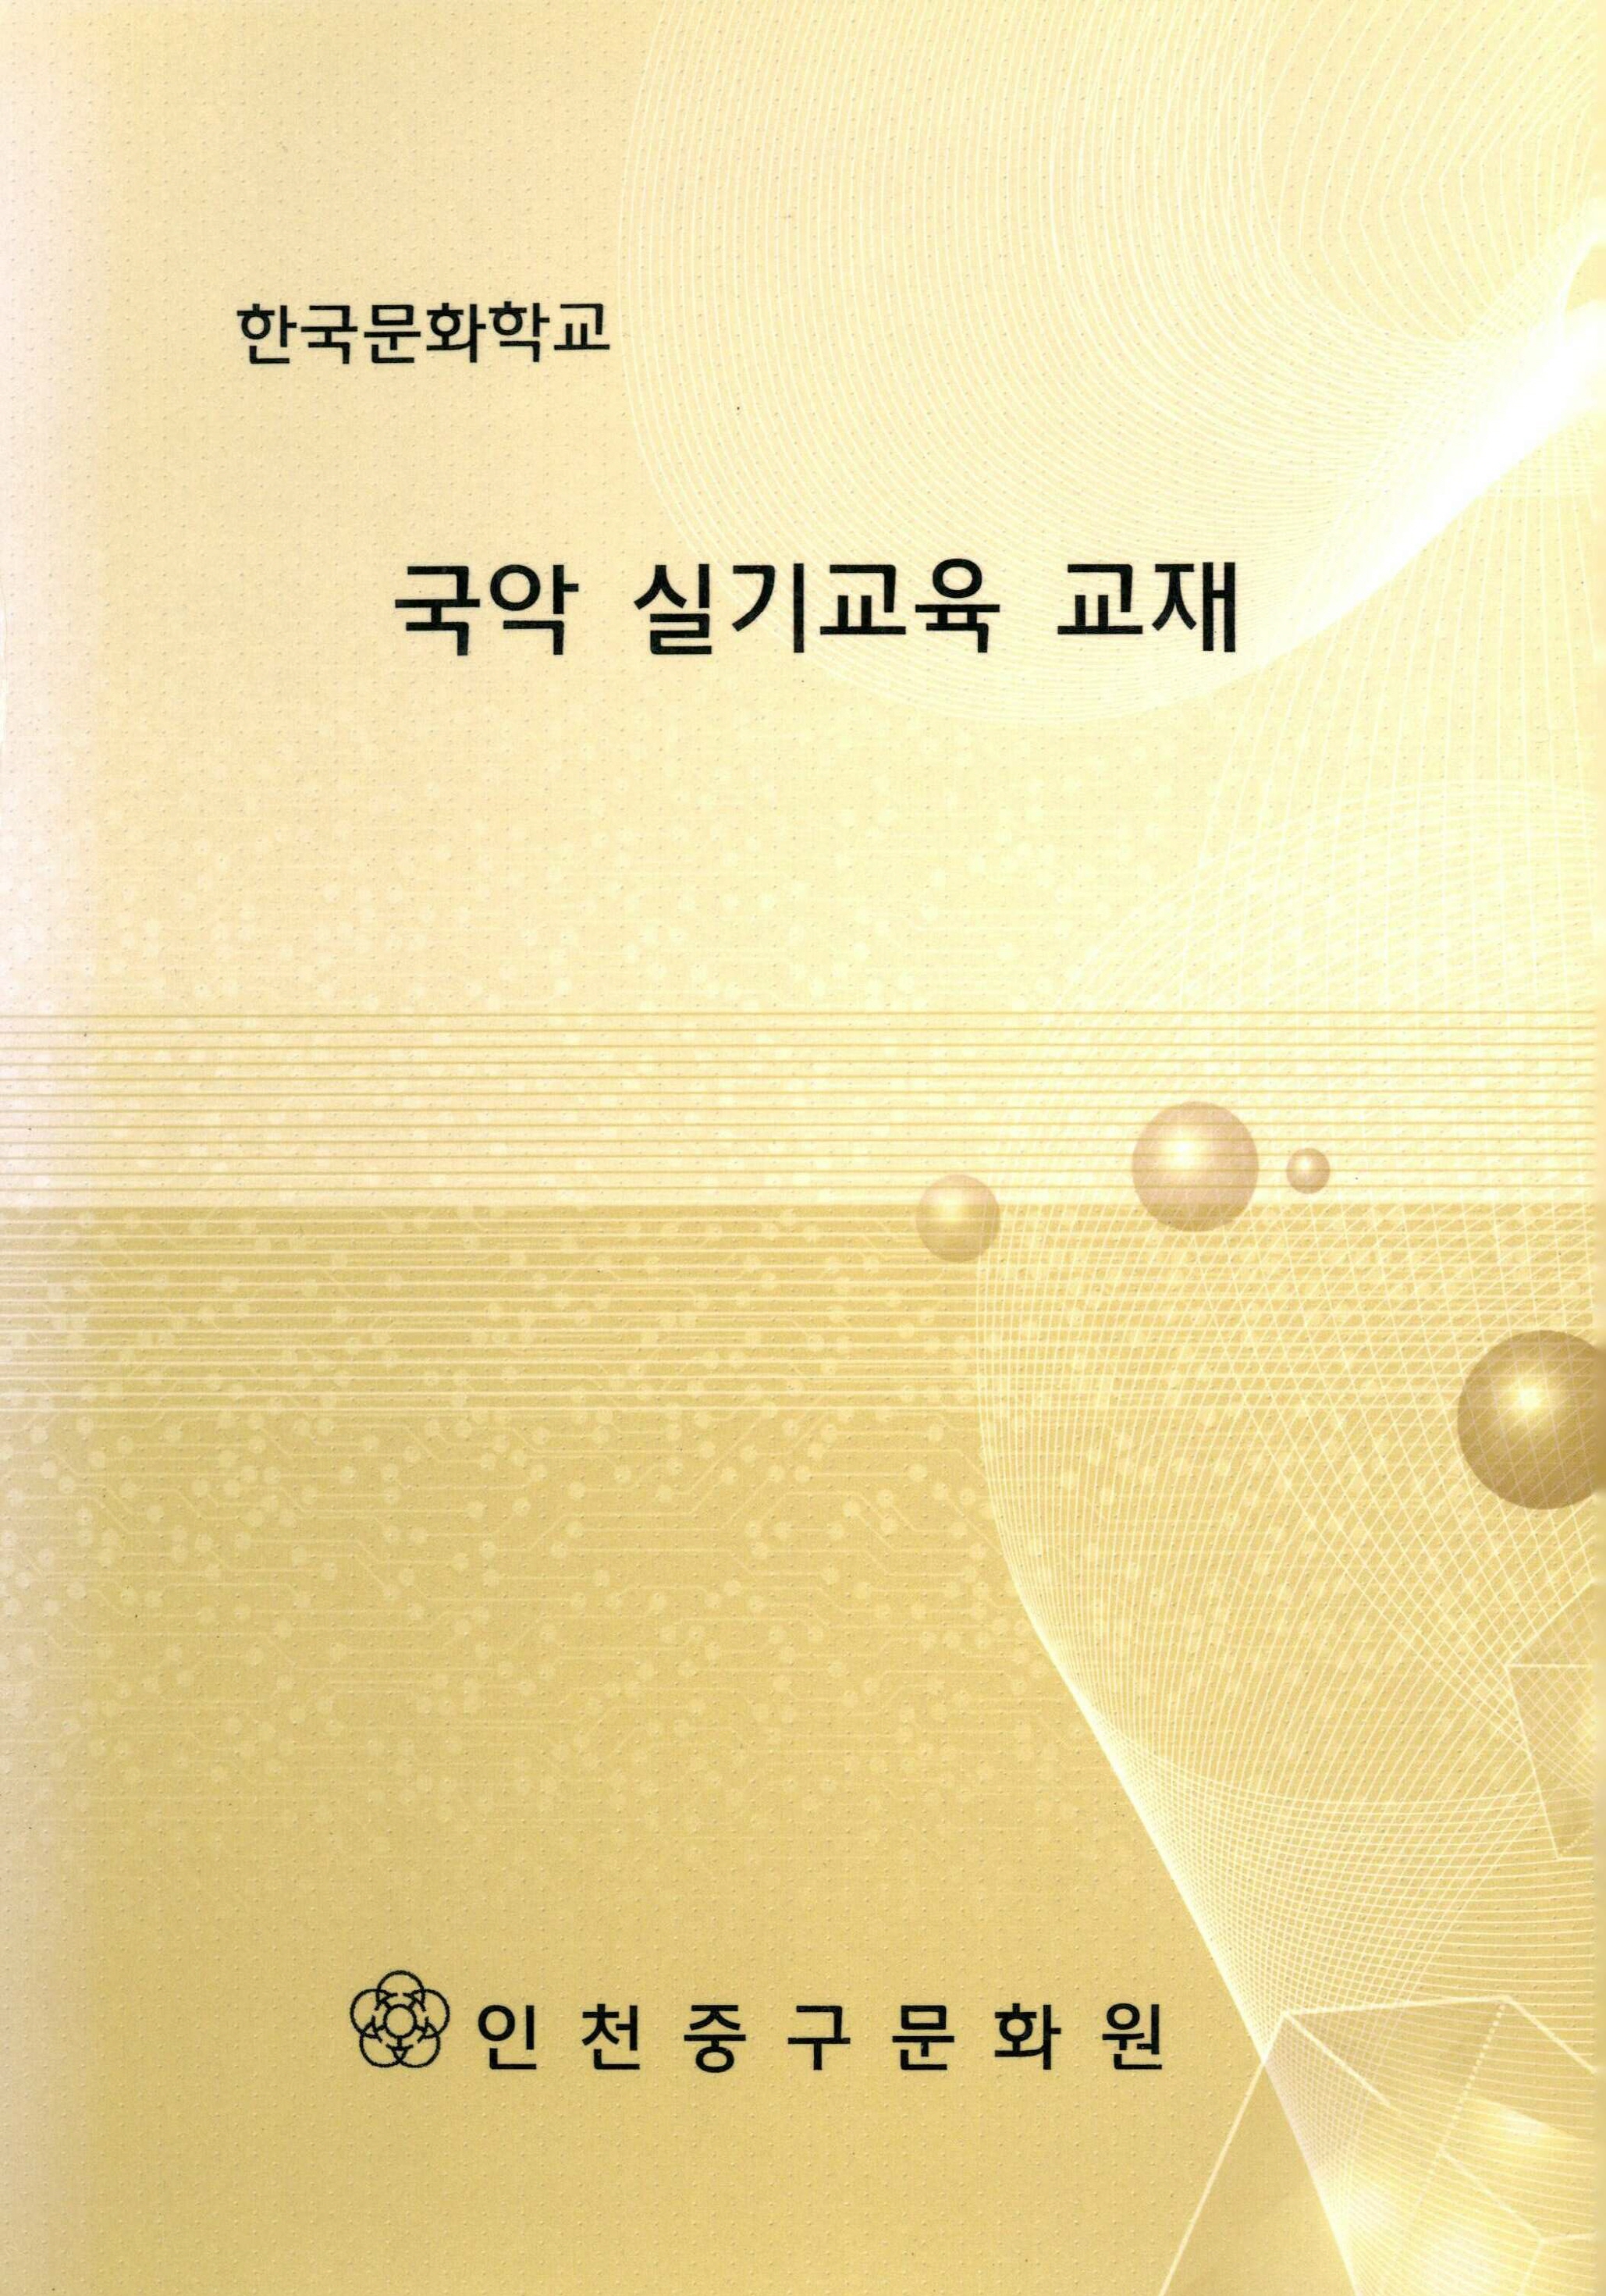 한국문화학교 국악 실기교육 교재